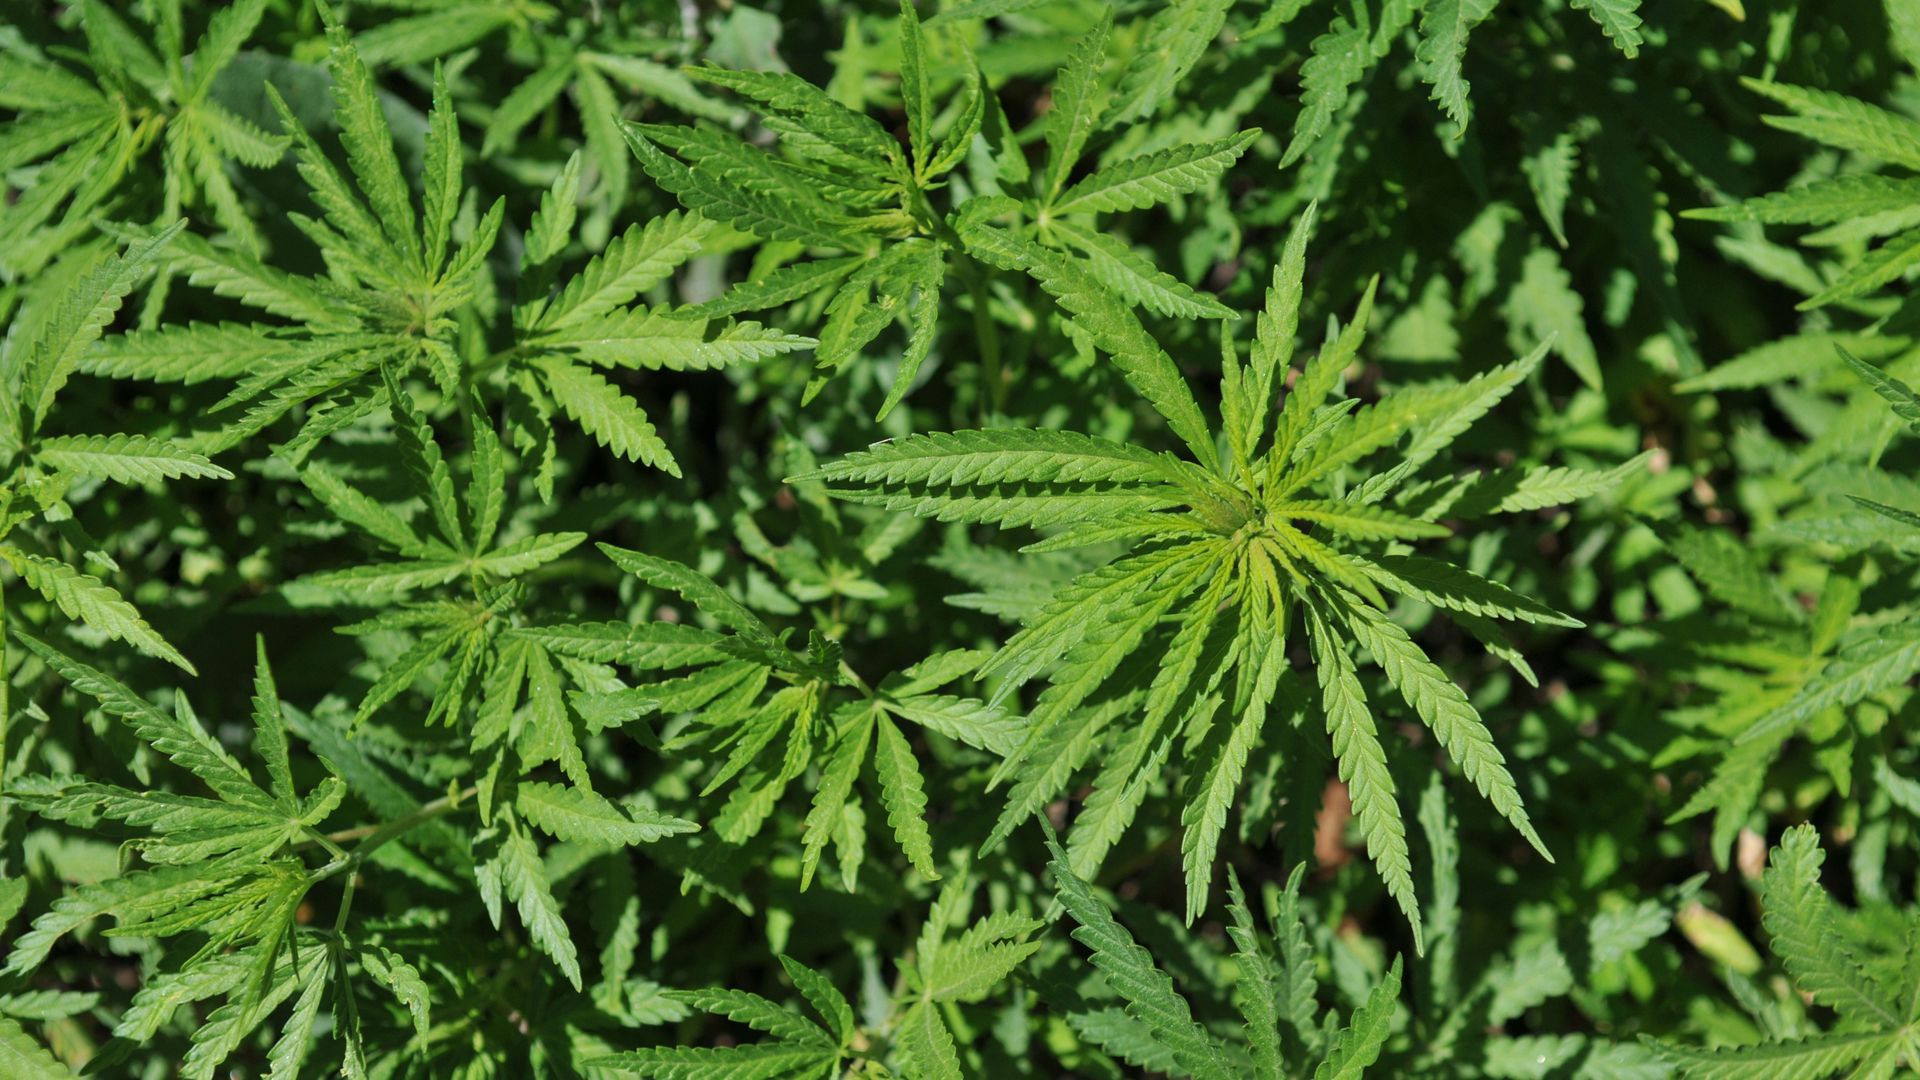 A photo of a wild cannabis plant, or hemp